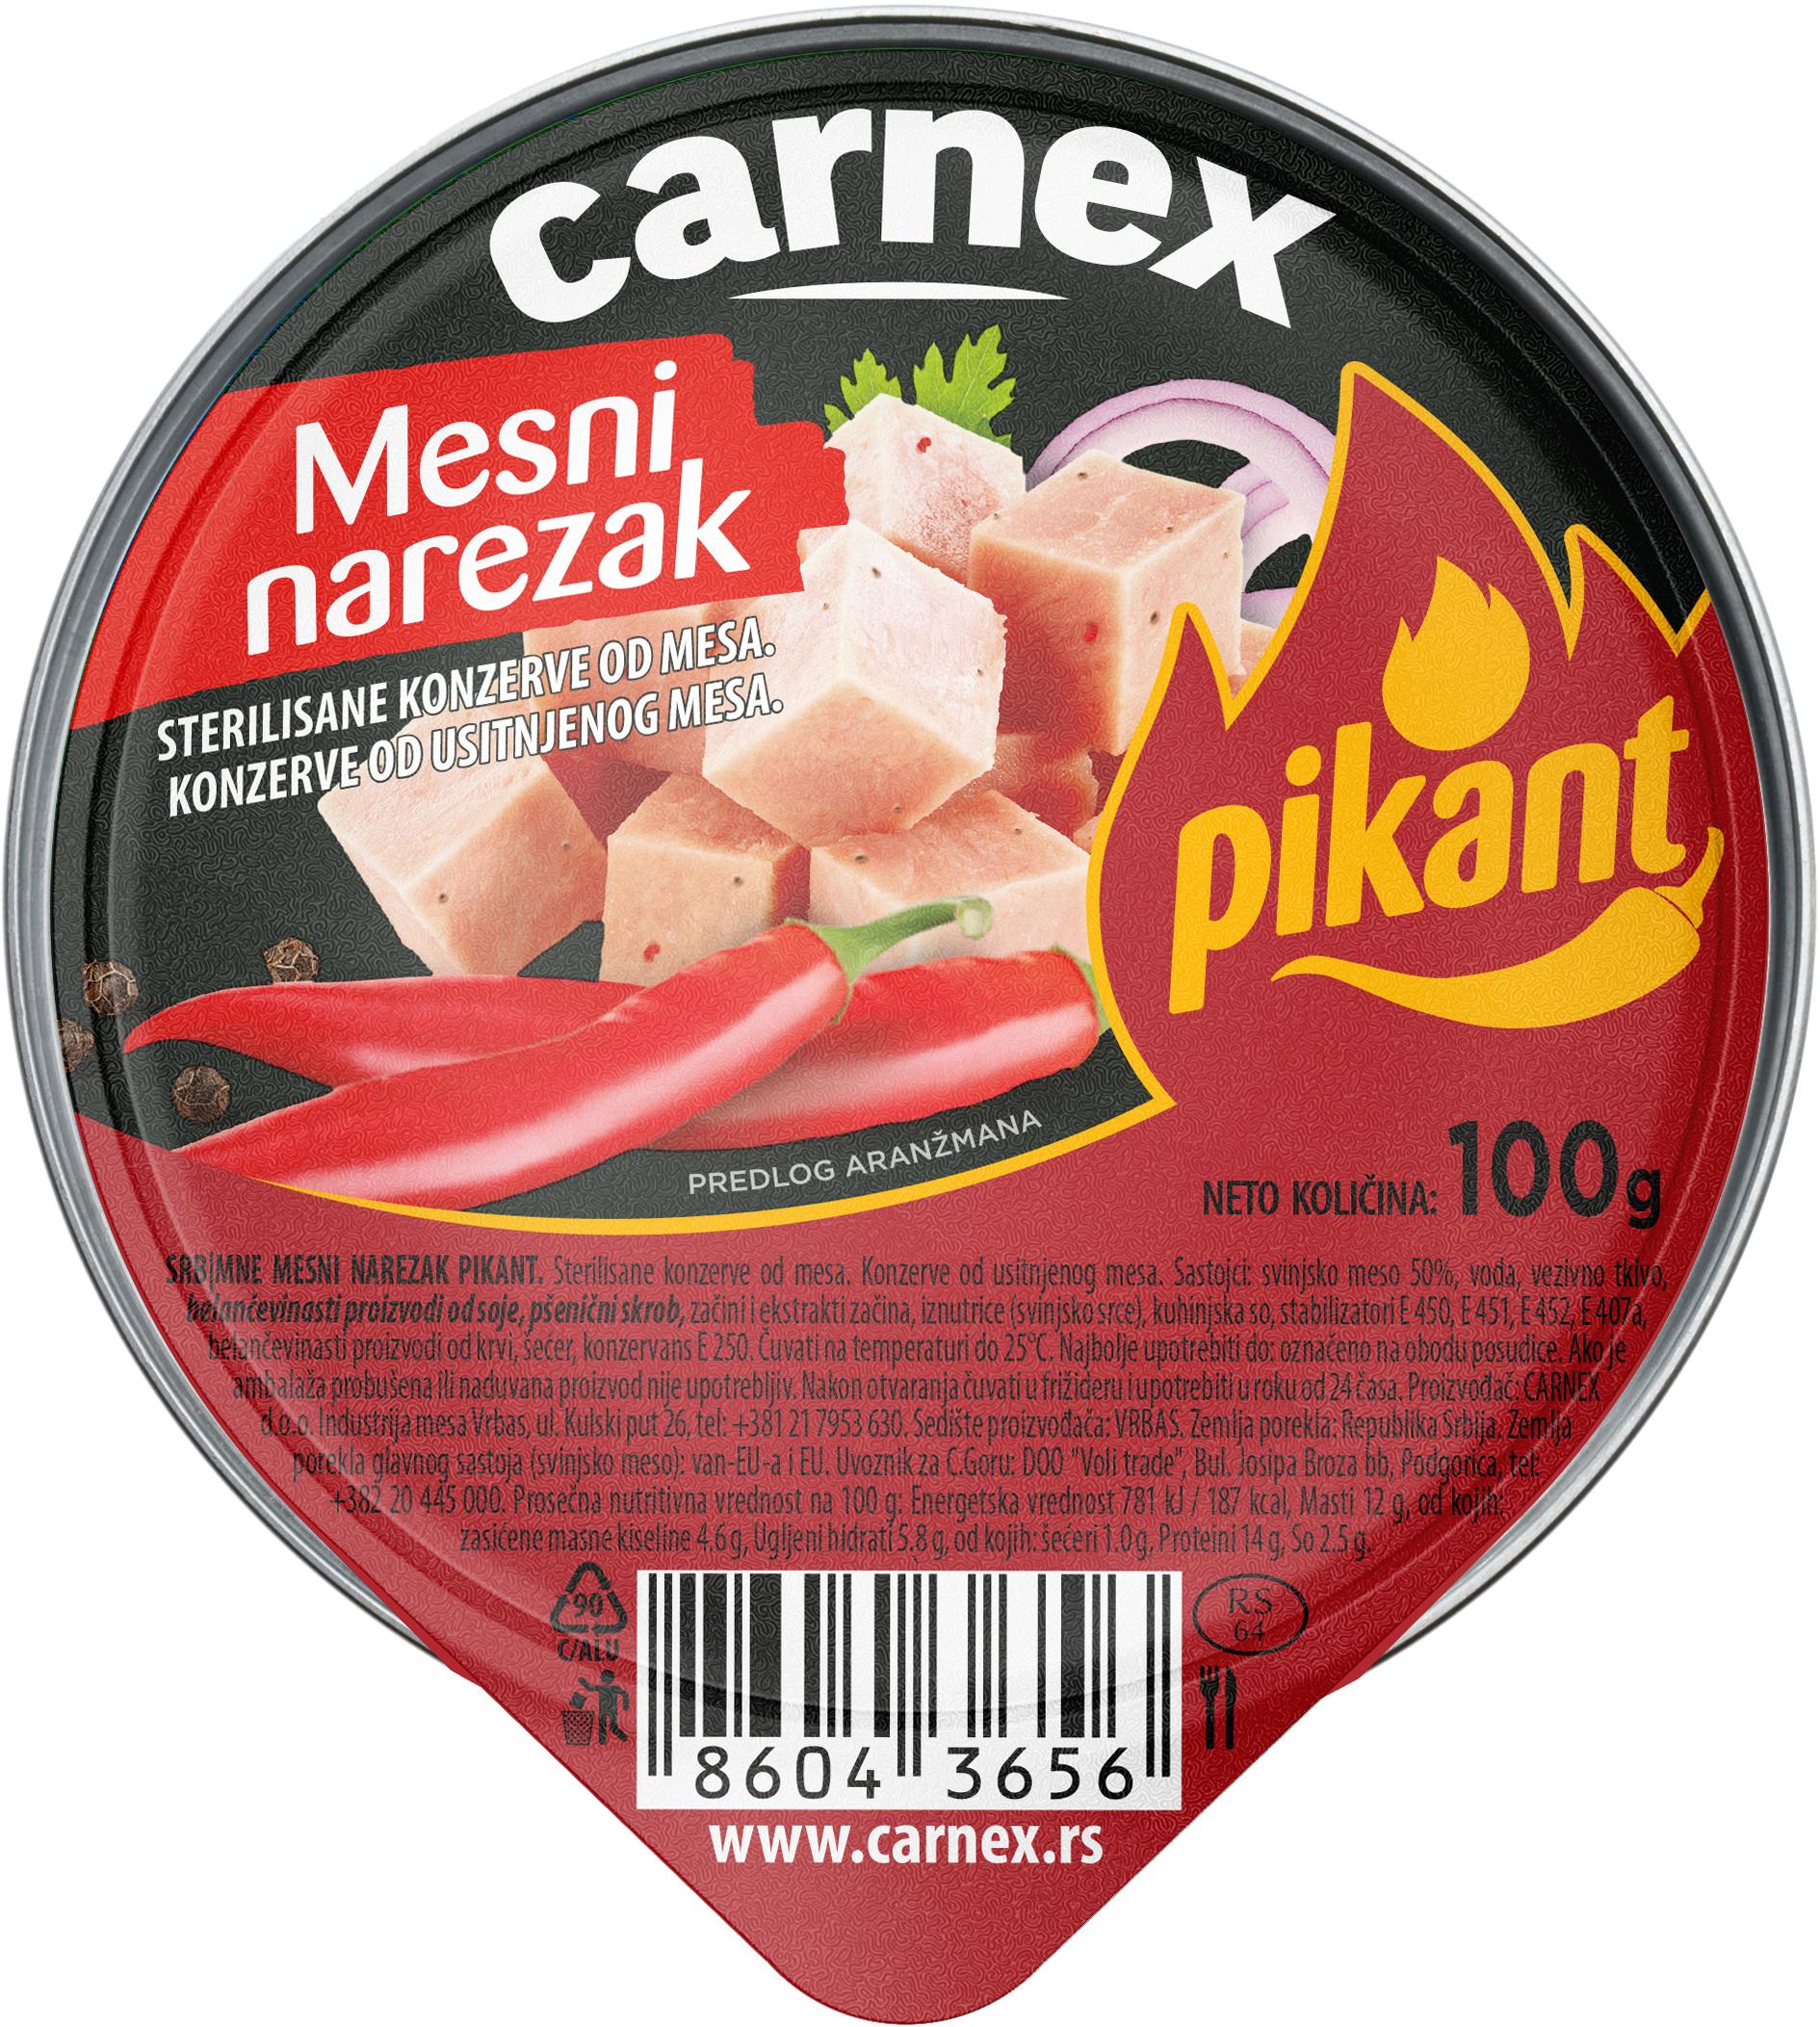 Slika za Mesni narezak pikant Carnex 100g